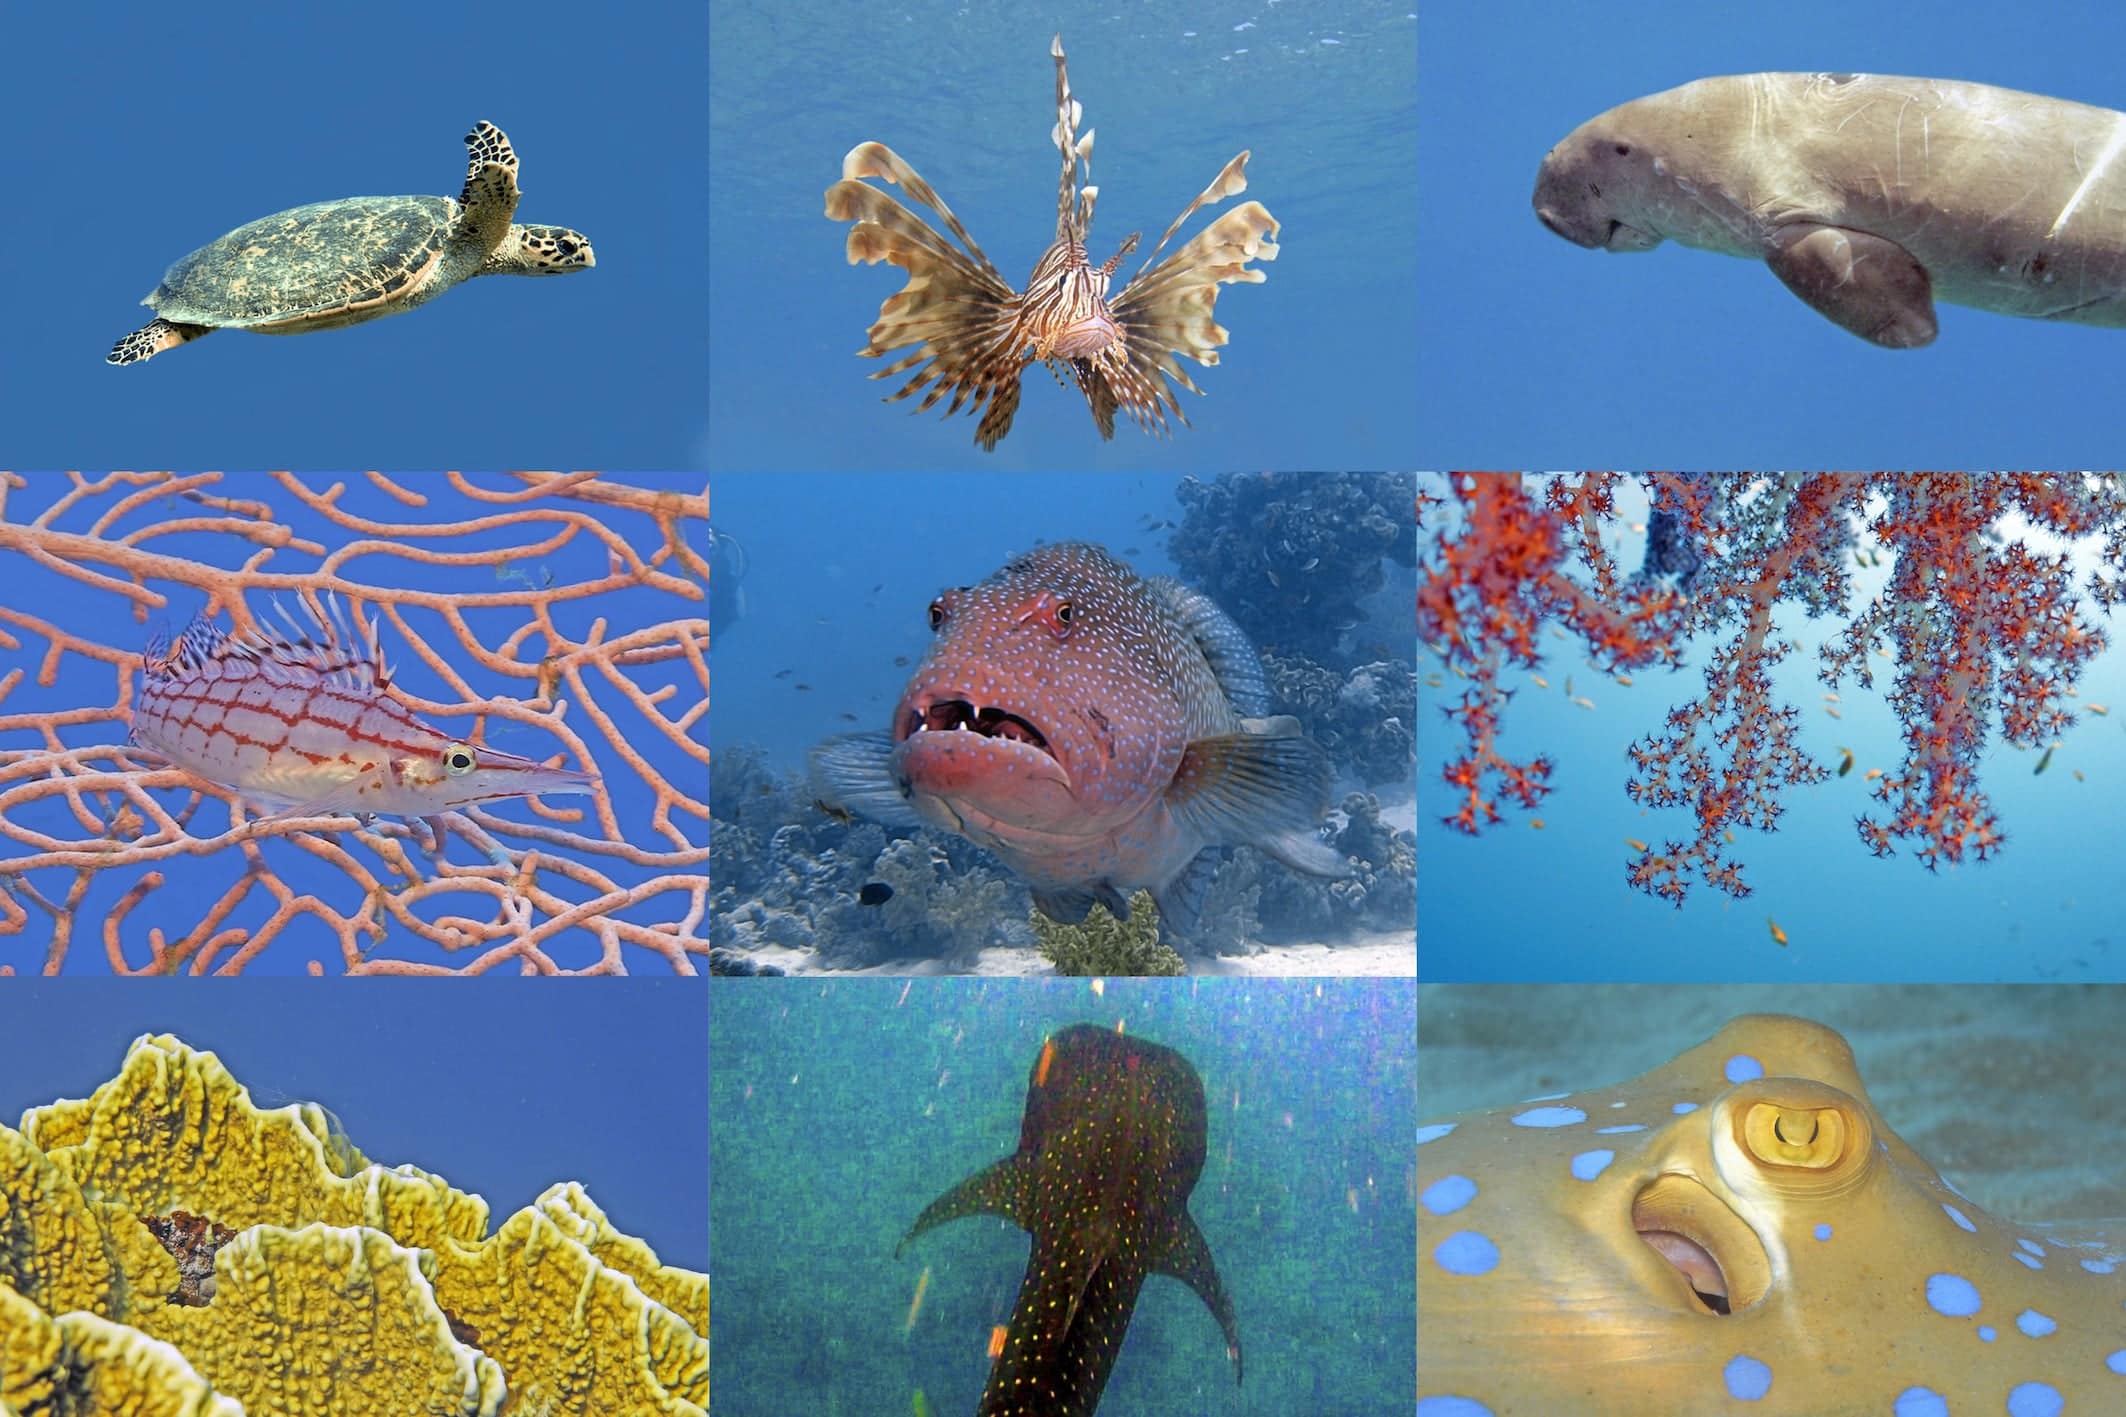 Korallenriffe existieren nur auf 0,2 Prozent der Ozeanflächen der Erde. Copyright: Heinz Krimmer / www.ICRS2020.de